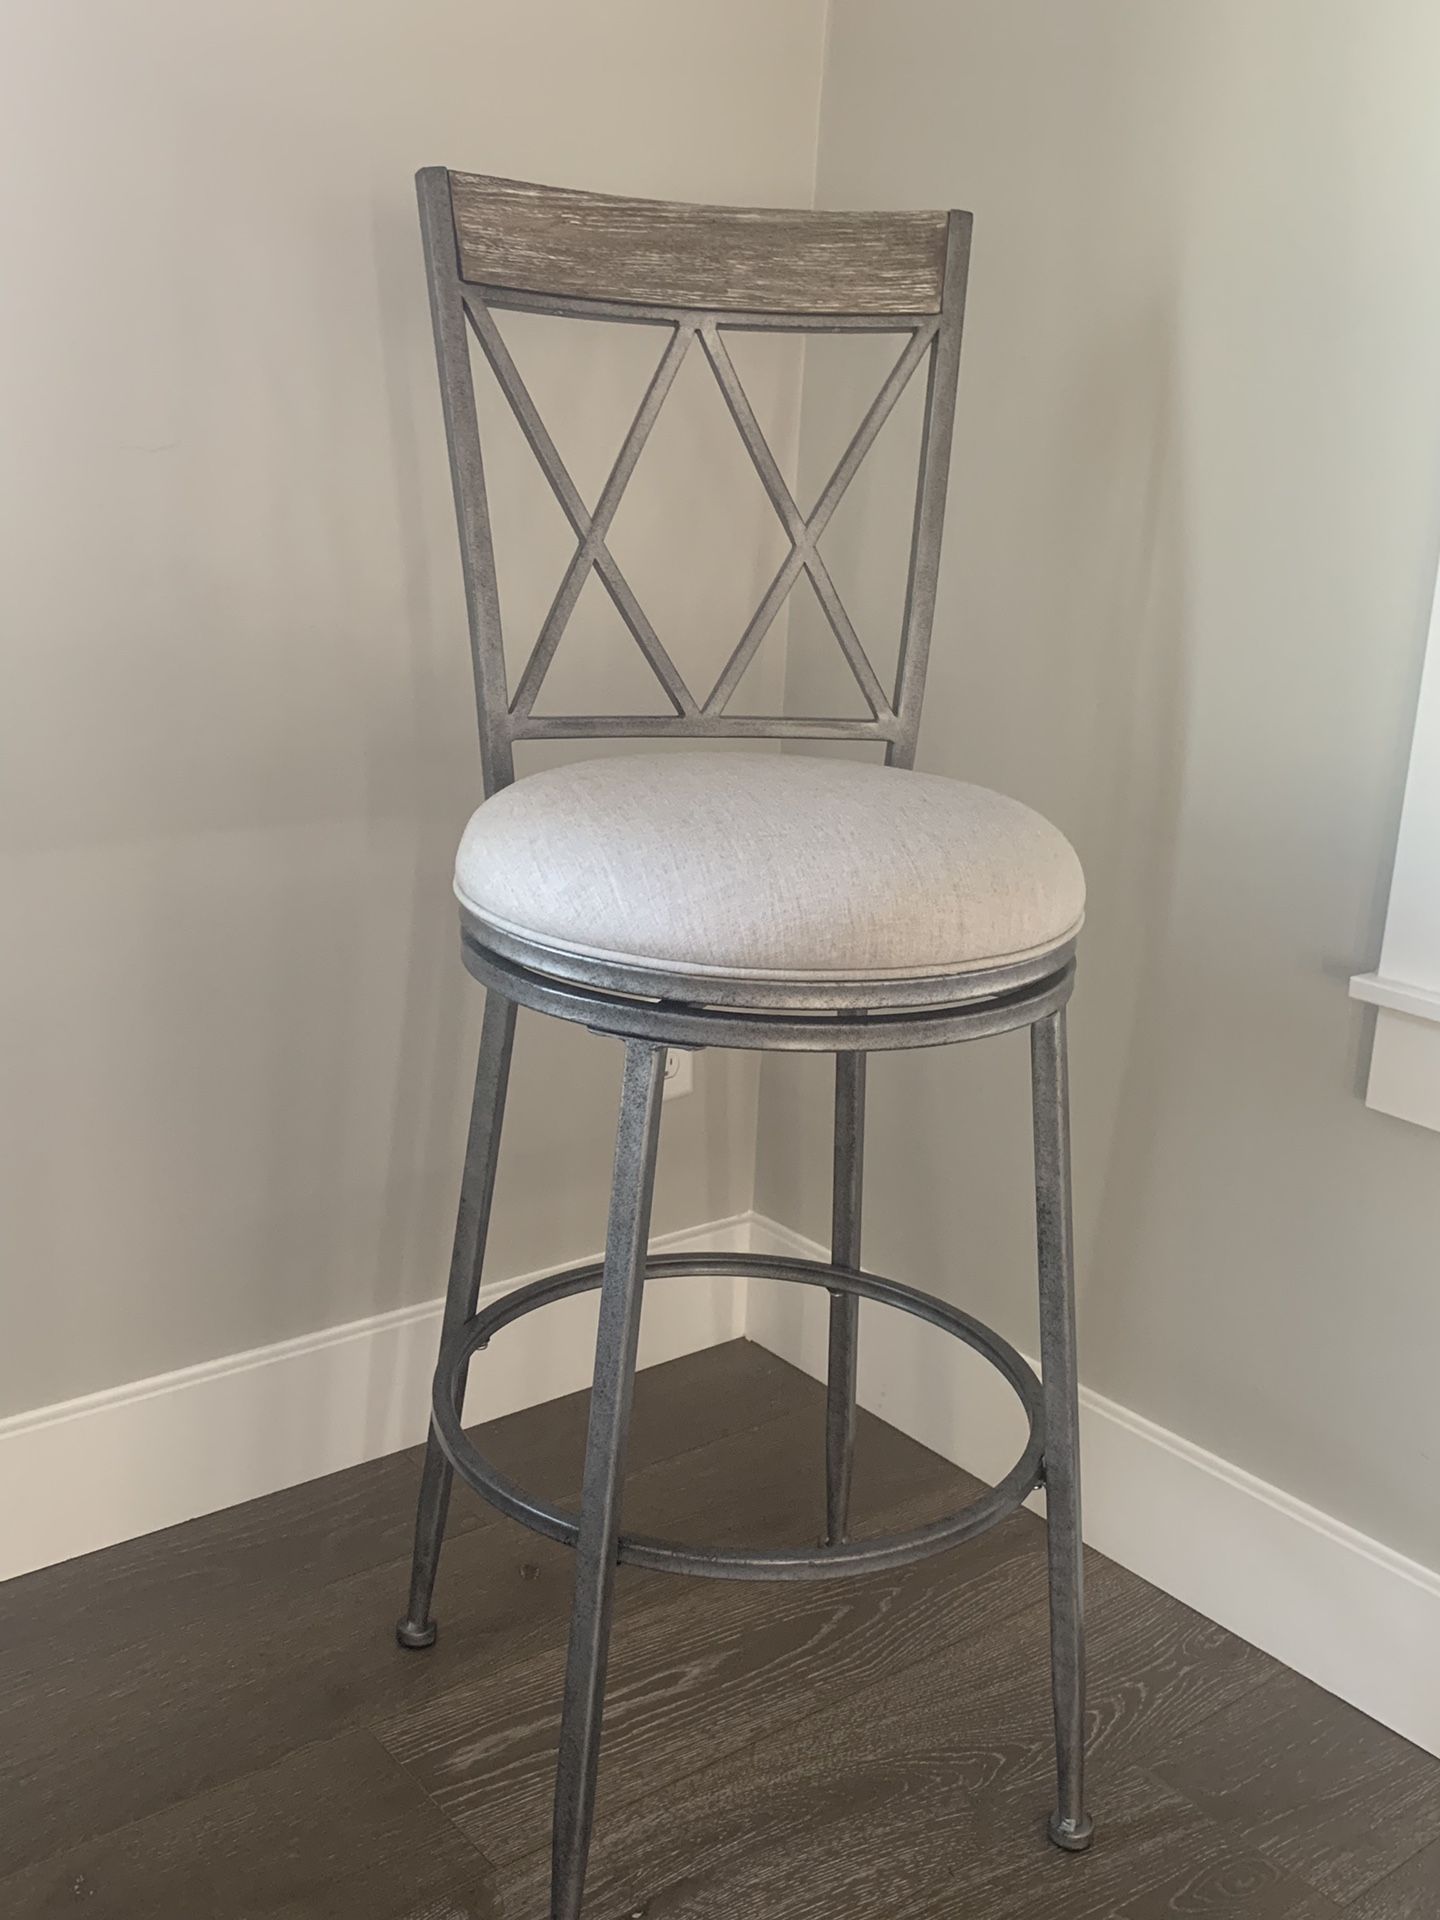 Indoor/outdoor swivel bar stool